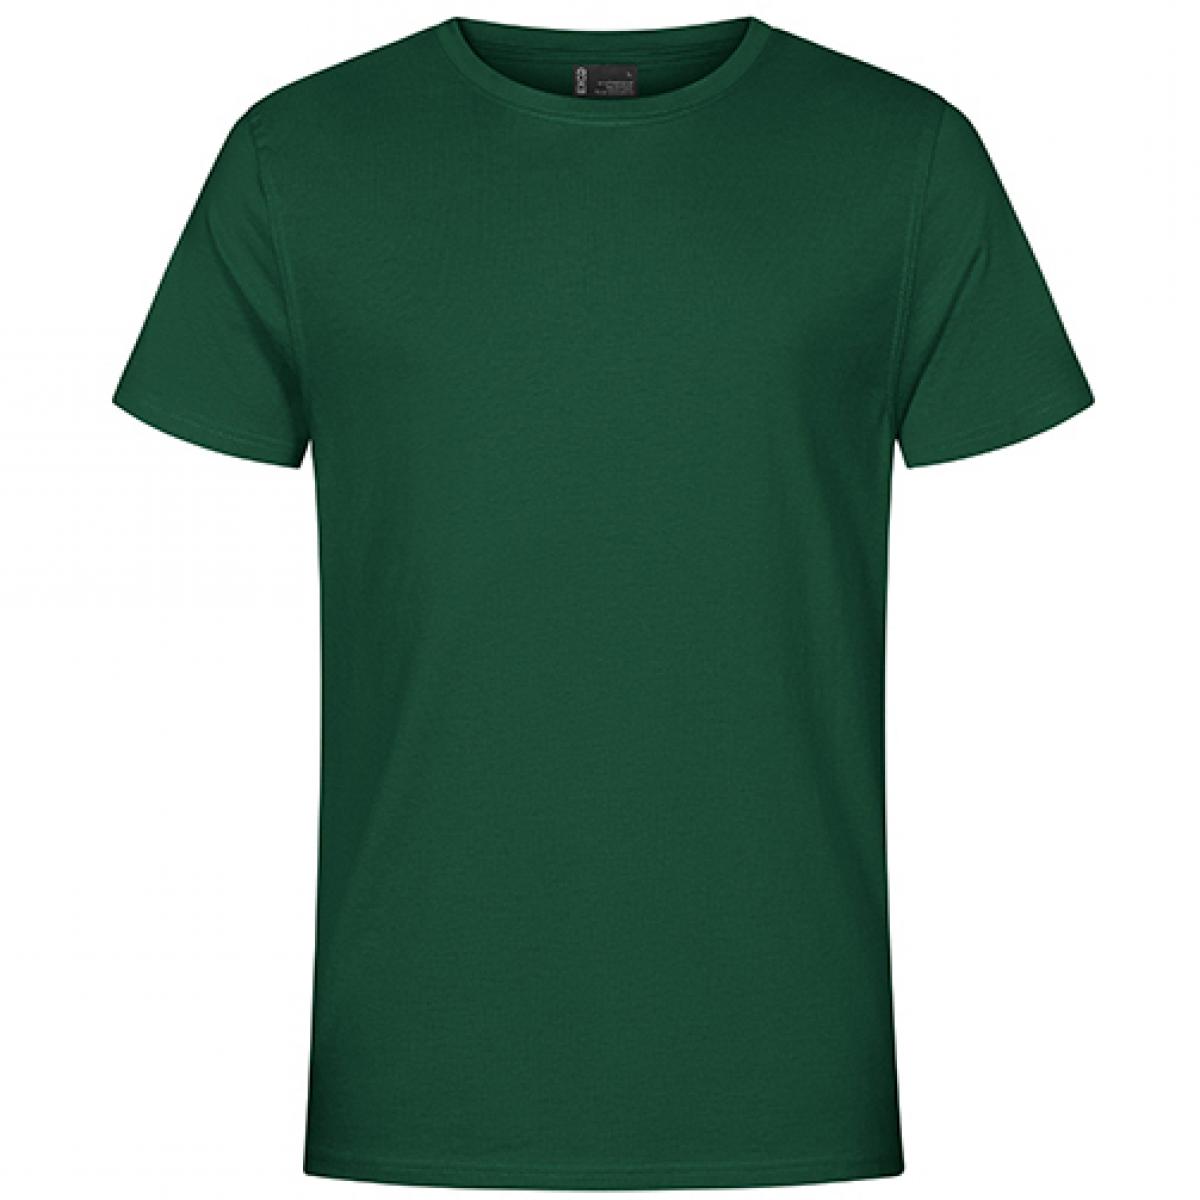 Hersteller: EXCD by Promodoro Herstellernummer: 3077 Artikelbezeichnung: Herren T-Shirt, Single-Jersey Farbe: Forest